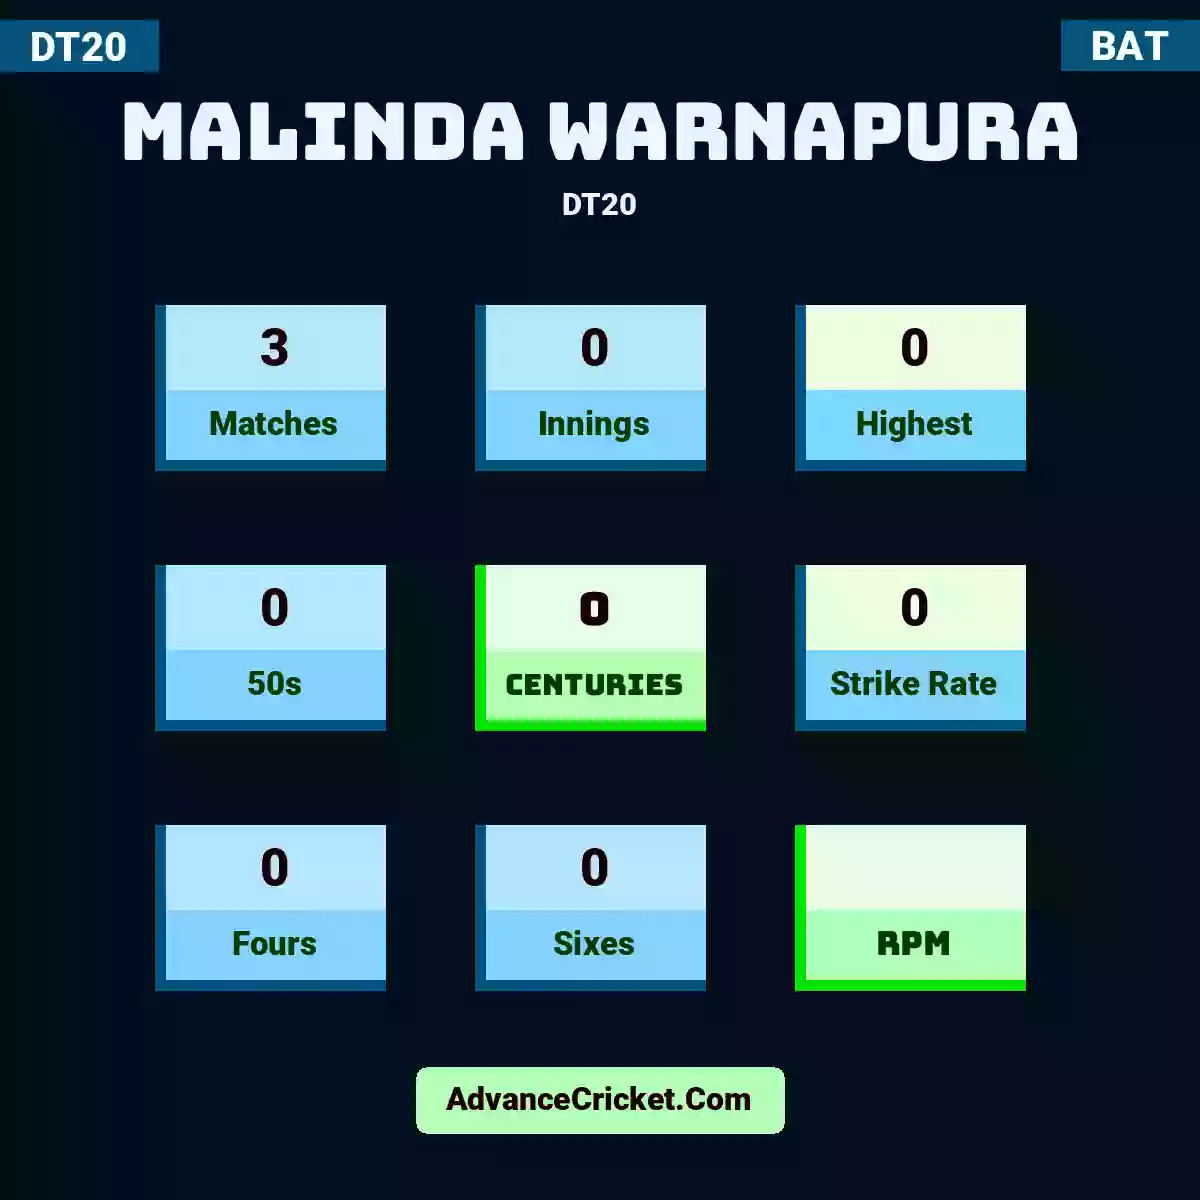 Malinda Warnapura DT20 , Malinda Warnapura played 3 matches, scored 0 runs as highest, 0 half-centuries, and 0 centuries, with a strike rate of 0. M.Warnapura hit 0 fours and 0 sixes.